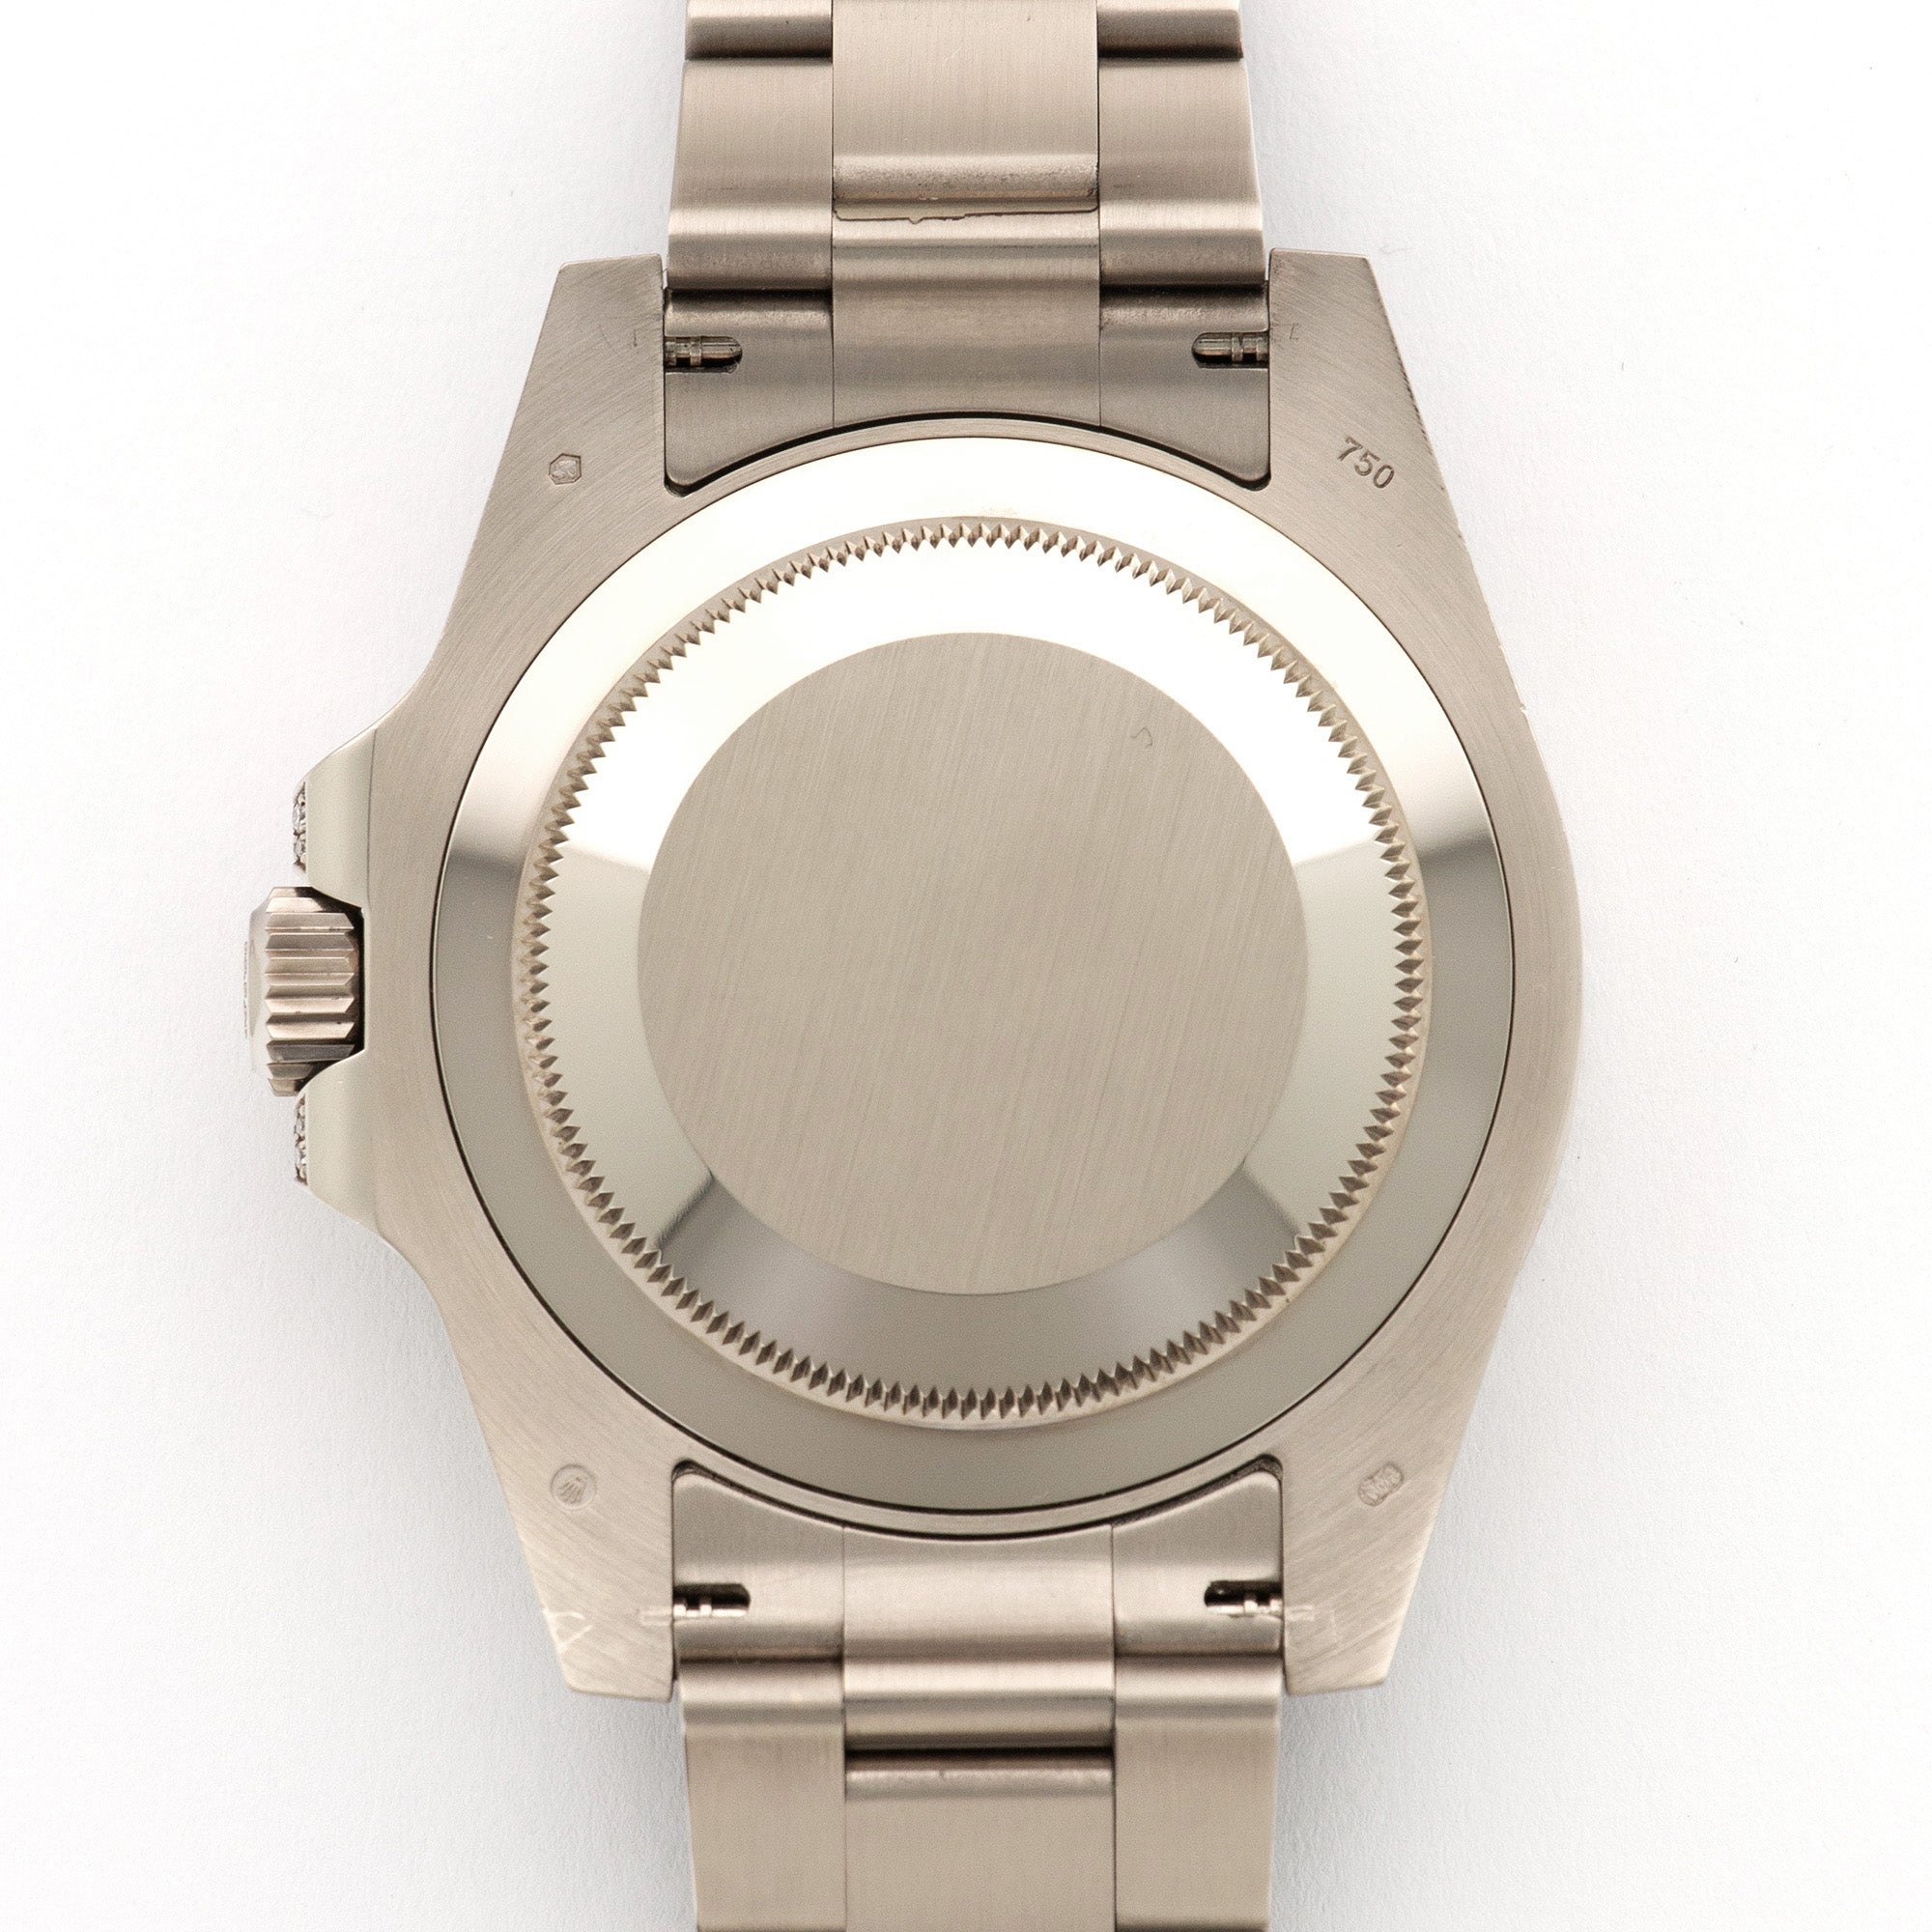 Rolex White Gold GMT-Master II Diamond &amp; Sapphire Watch Ref. 116759